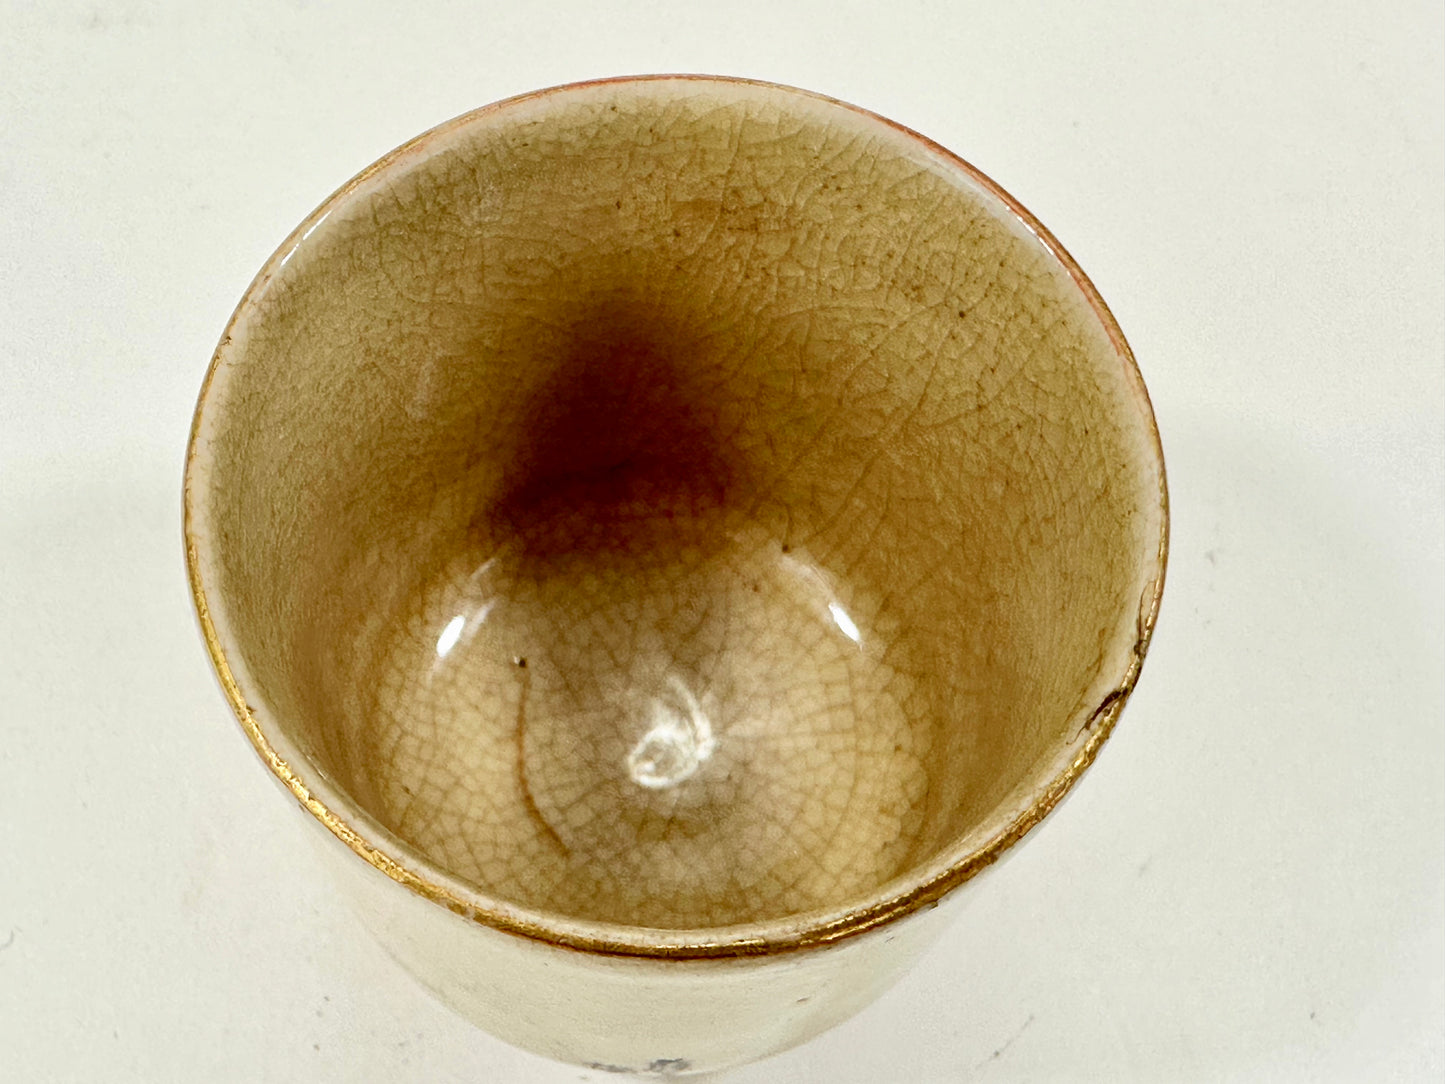 Vintage Japanese Taisho Era c.1920's Ceramic Sakazuki Sake Cup 2.25" Signed